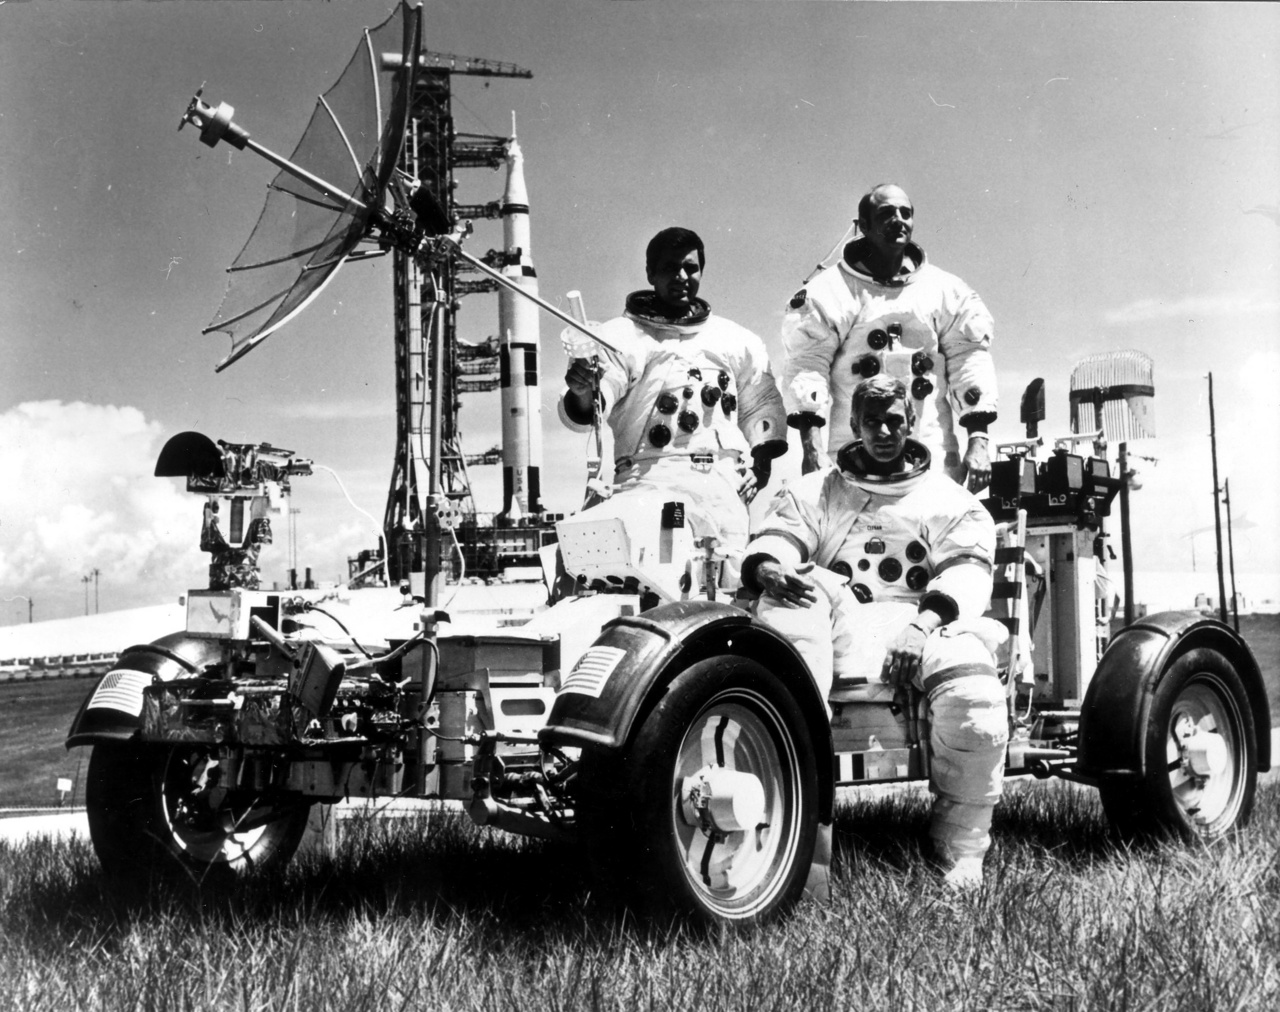 Az Apollo-17 csapata, Harrison Schmitt, Eugene Cernan és Ronald Evans a Kennedy Űrközpontban 1972-ben. Mögöttük a Saturn V hordozórakéta, előtérben pedig a kiképzésükhöz használt holdjáró földi változata látható. Érdemes pillantást vetni a kerekekre. Mivel az űrben nem használhattak a nyomás és a hőmérséklet szélsőségessége miatt gumikerekeket, egy speciális titánhálóból készítették az abroncsokat, amit a magyar származású Pavlics Ferenc mérnök vezette tervezőcsapat készített.
                        